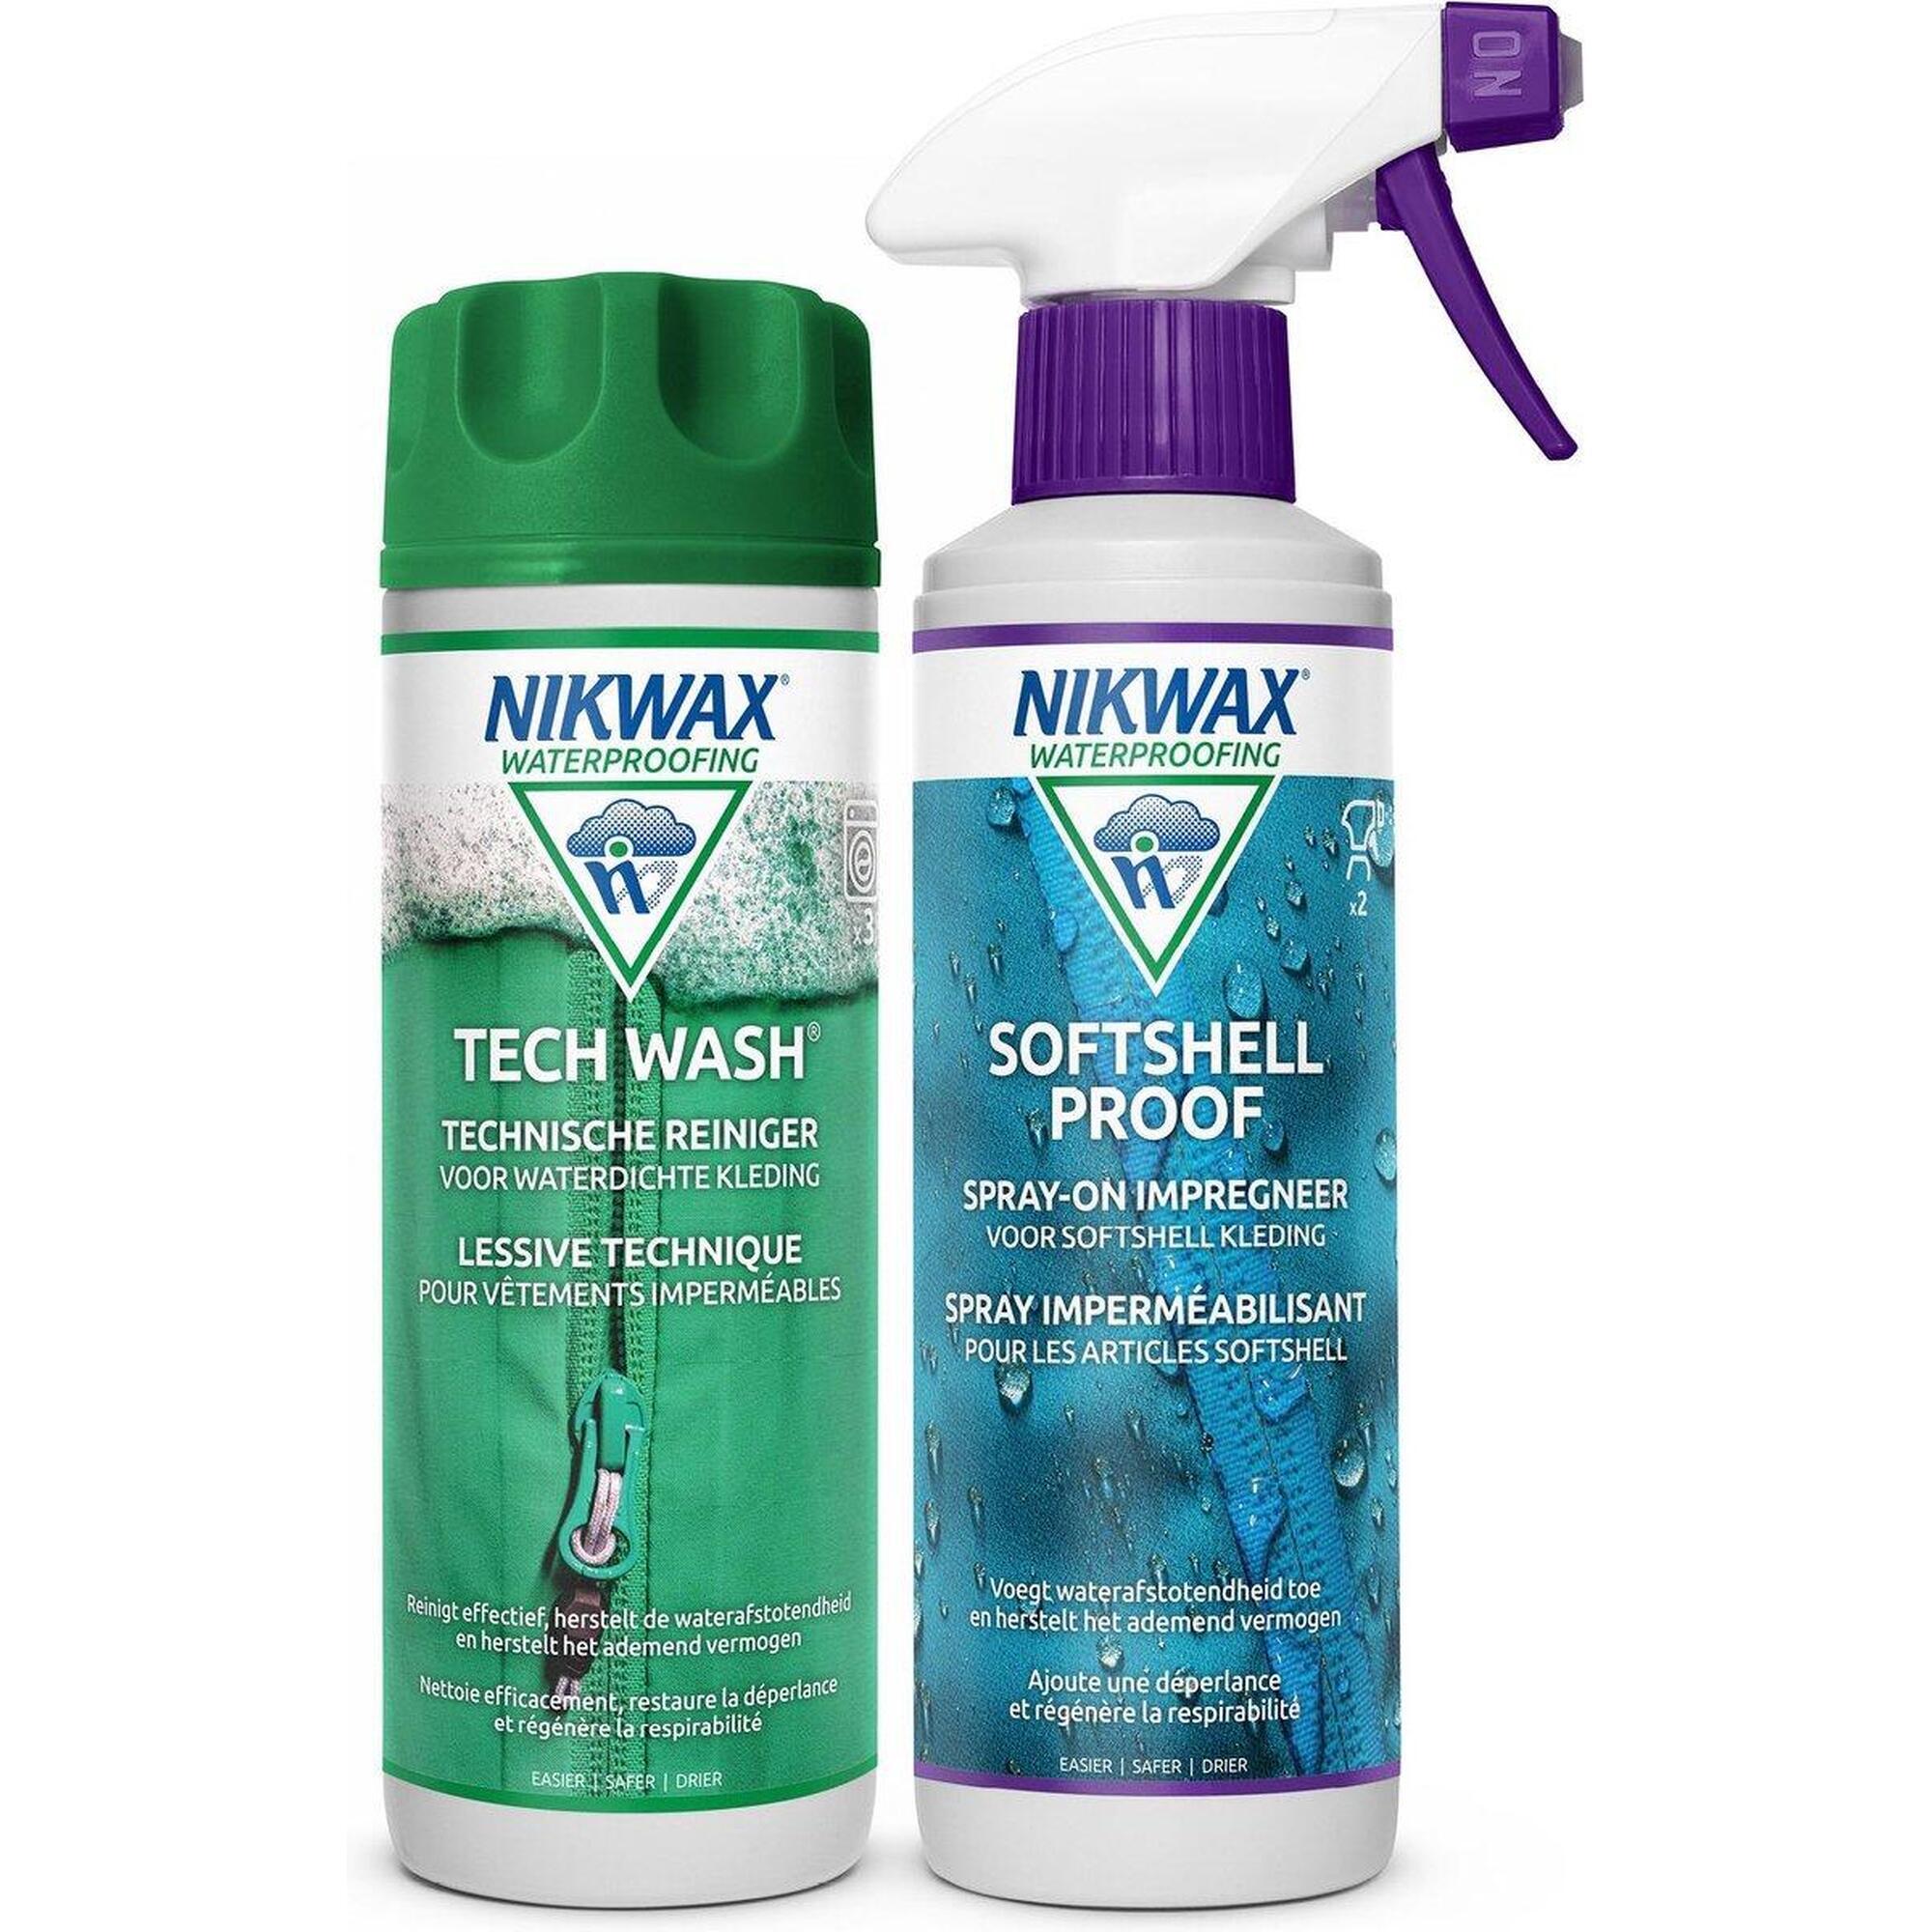 Waschmittel Tech Wash 300ml & Imprägniermittel Softshell Proof Spray-On 300ml